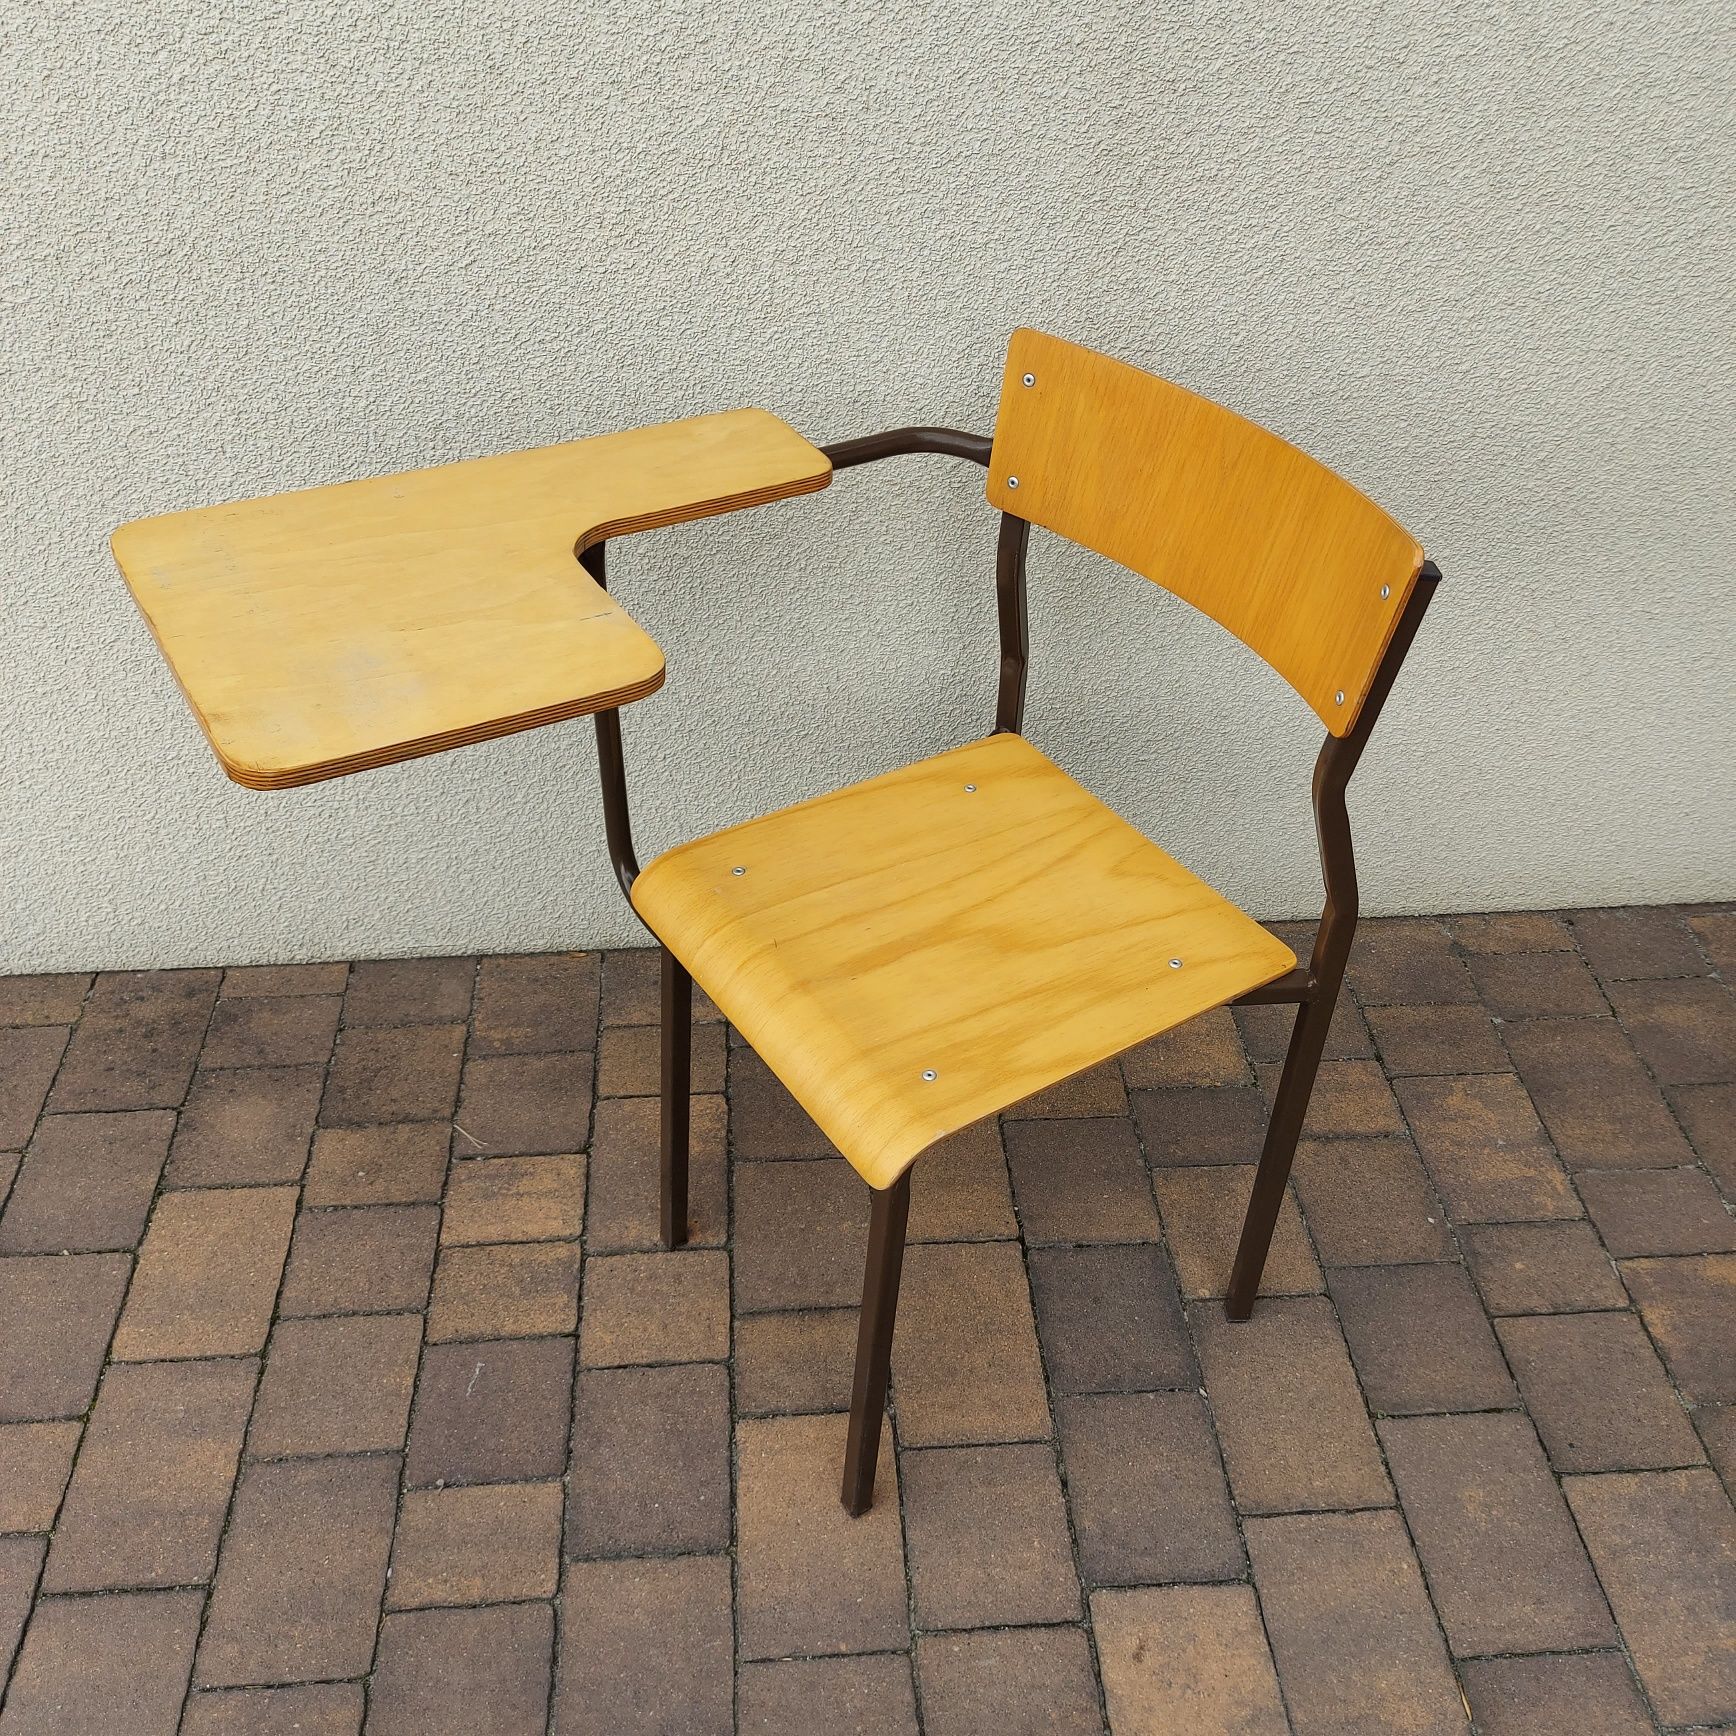 Ławka szkolna, krzesełko szkolne krzesło ze stolikiem, studenckie